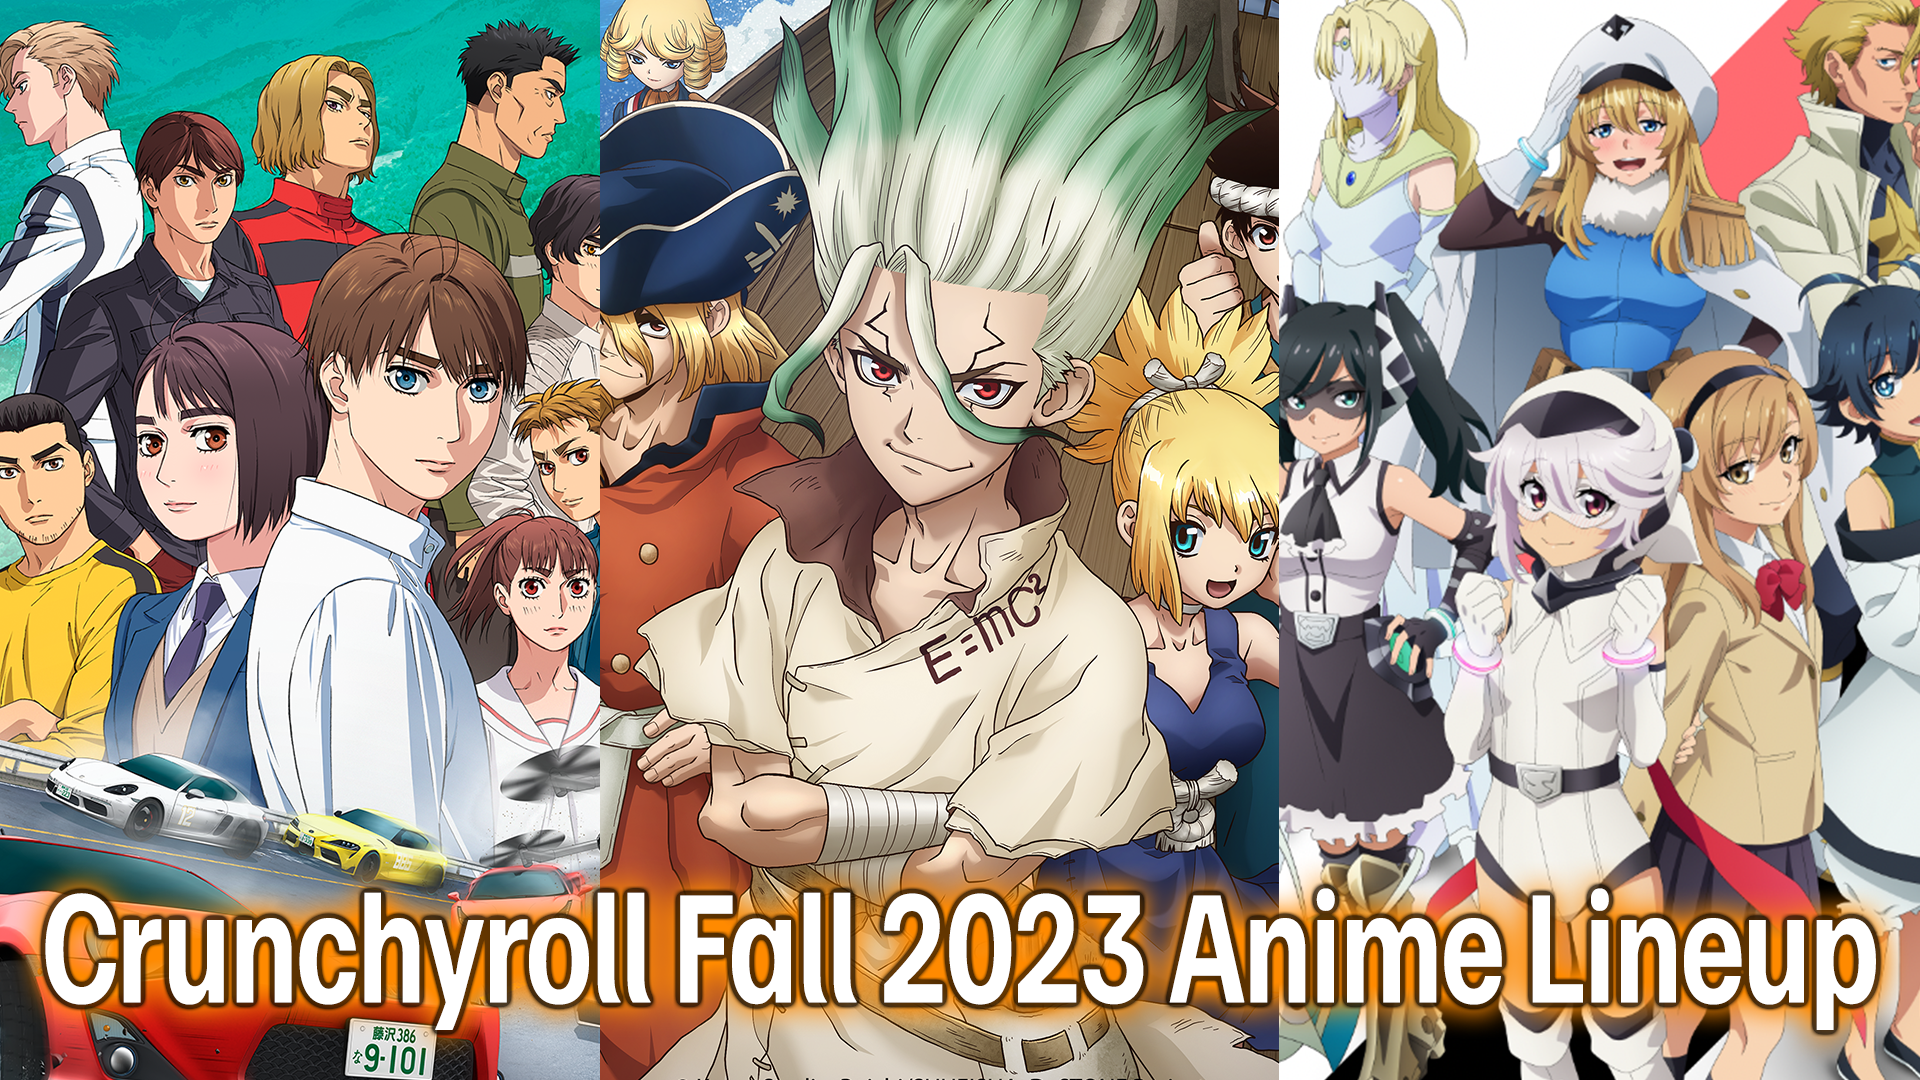 New on Crunchyroll: Fall 2023